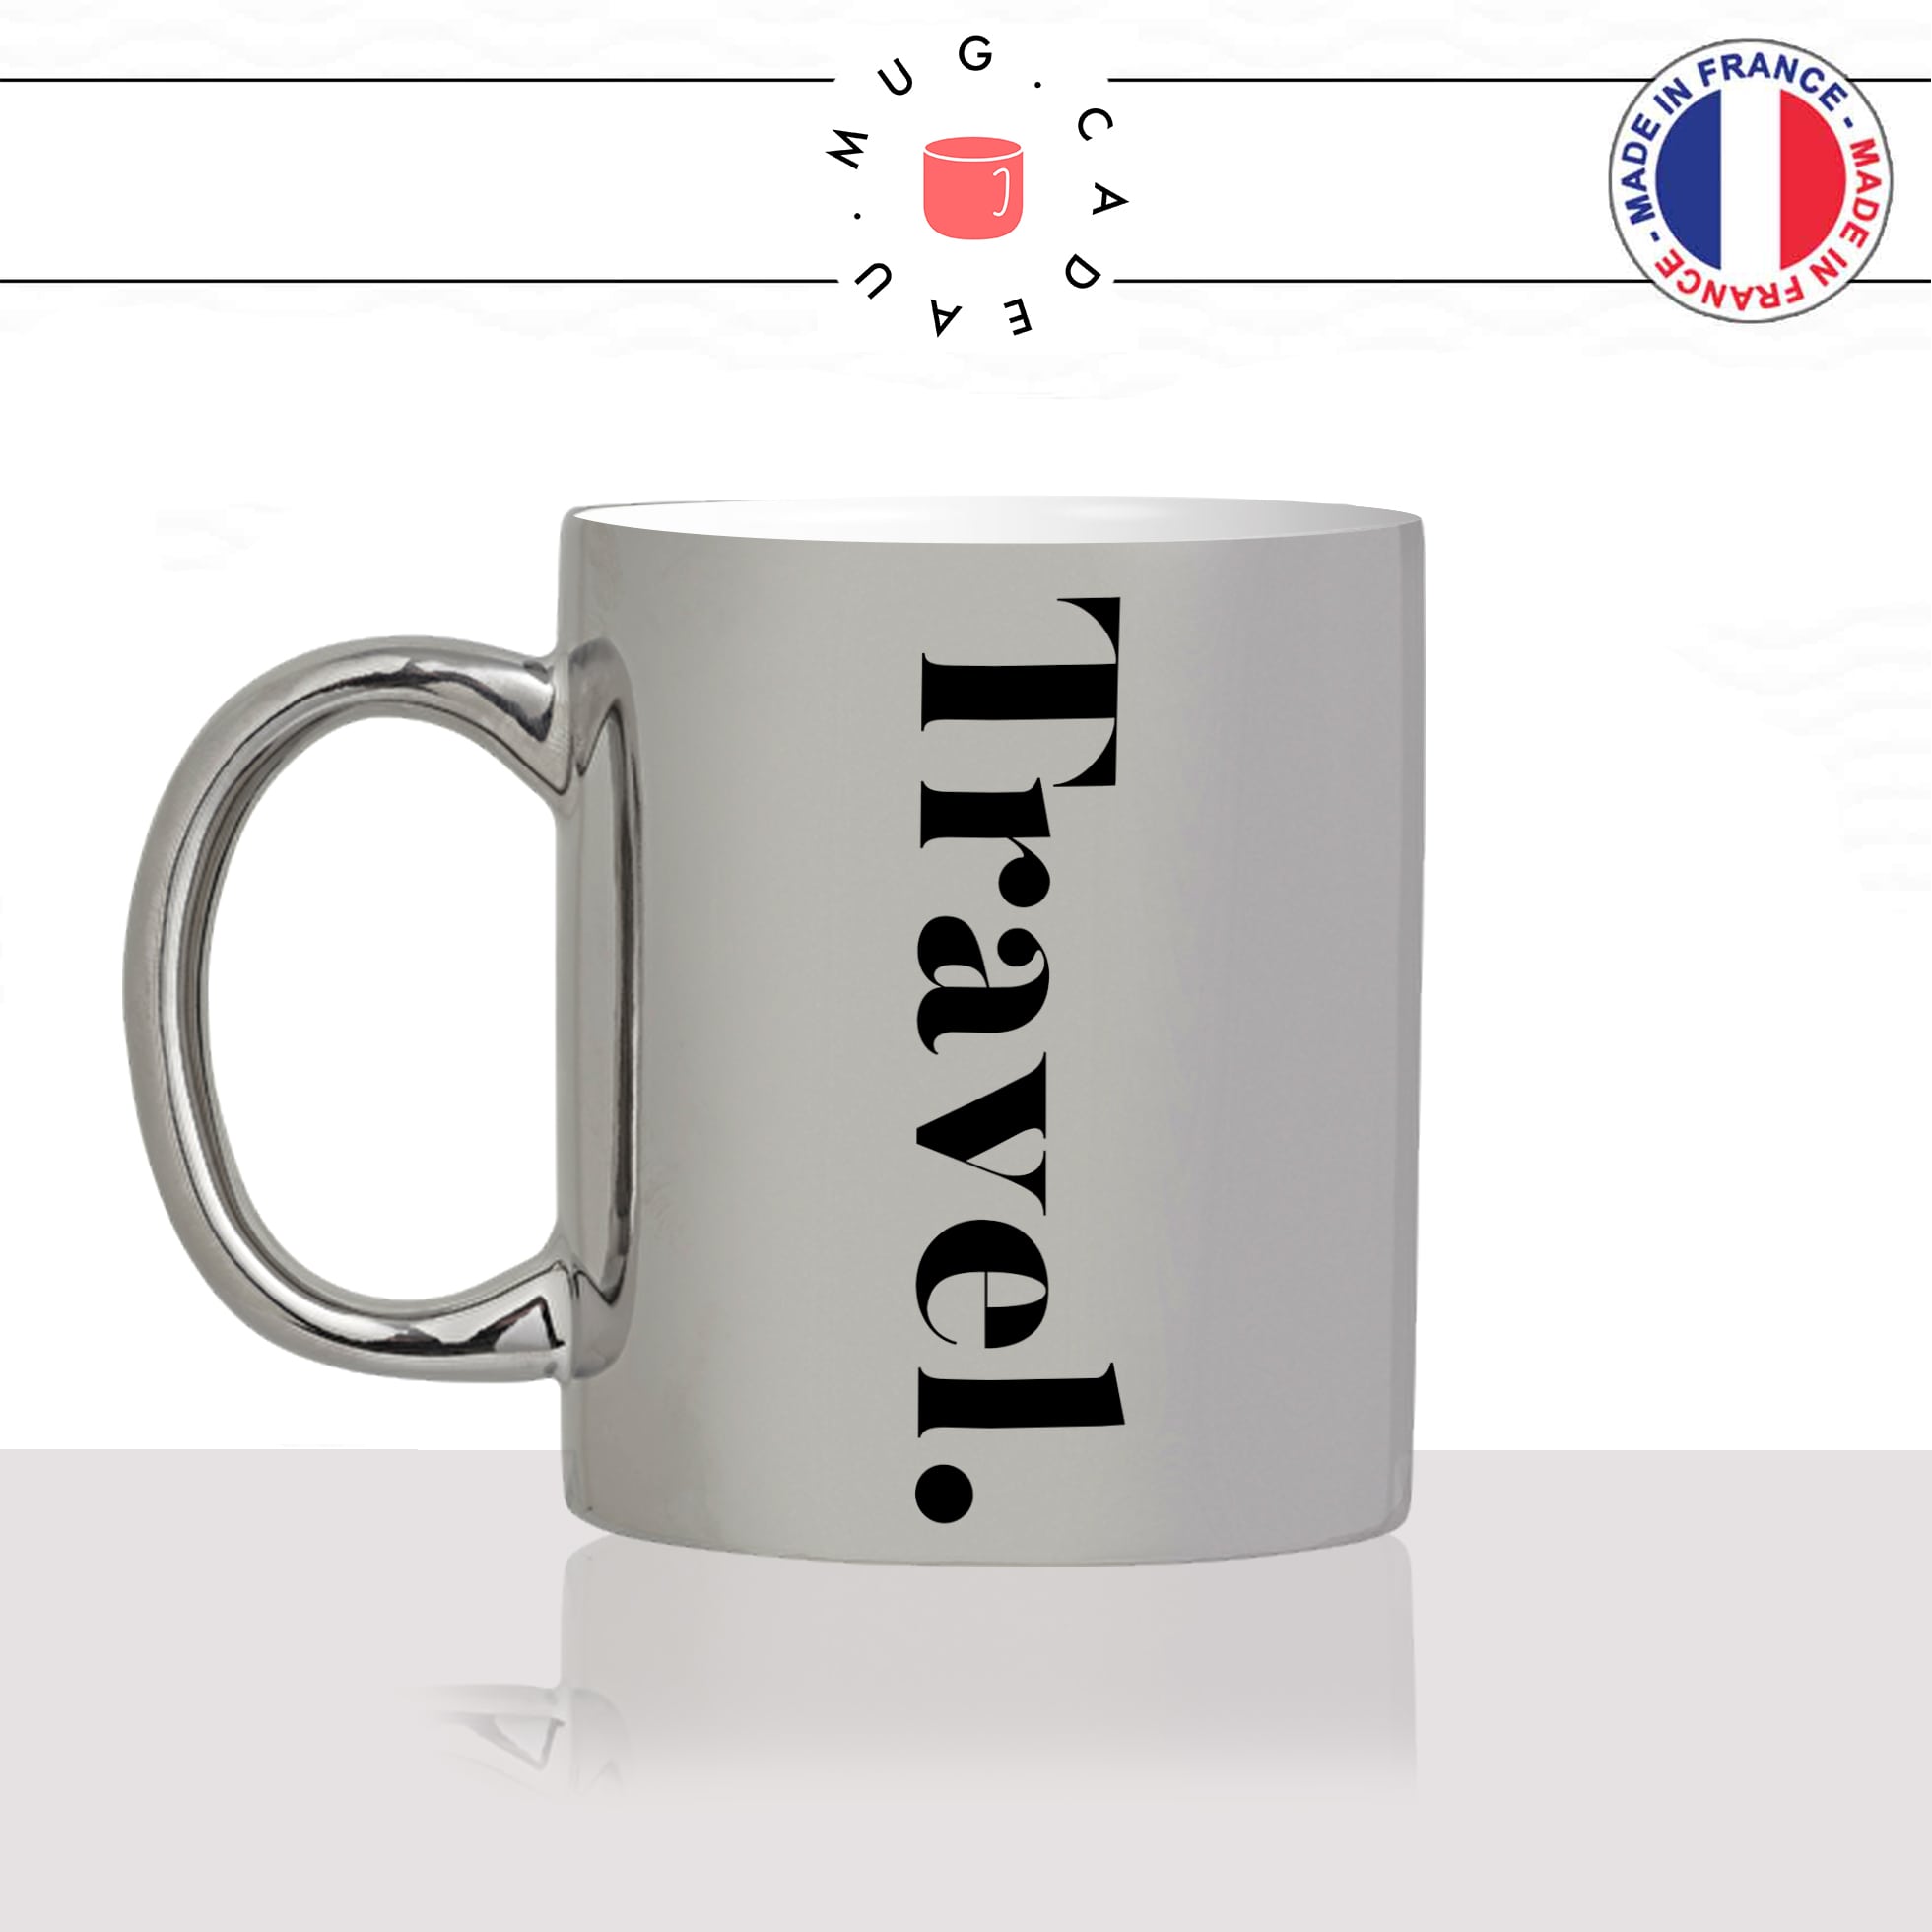 mug-tasse-silver-argenté-travel-voyage-calligraphie-lettrine-mot-anglais-collegue-décoration-amie-idée-cadeau-original-personnalisé-café-thé-min